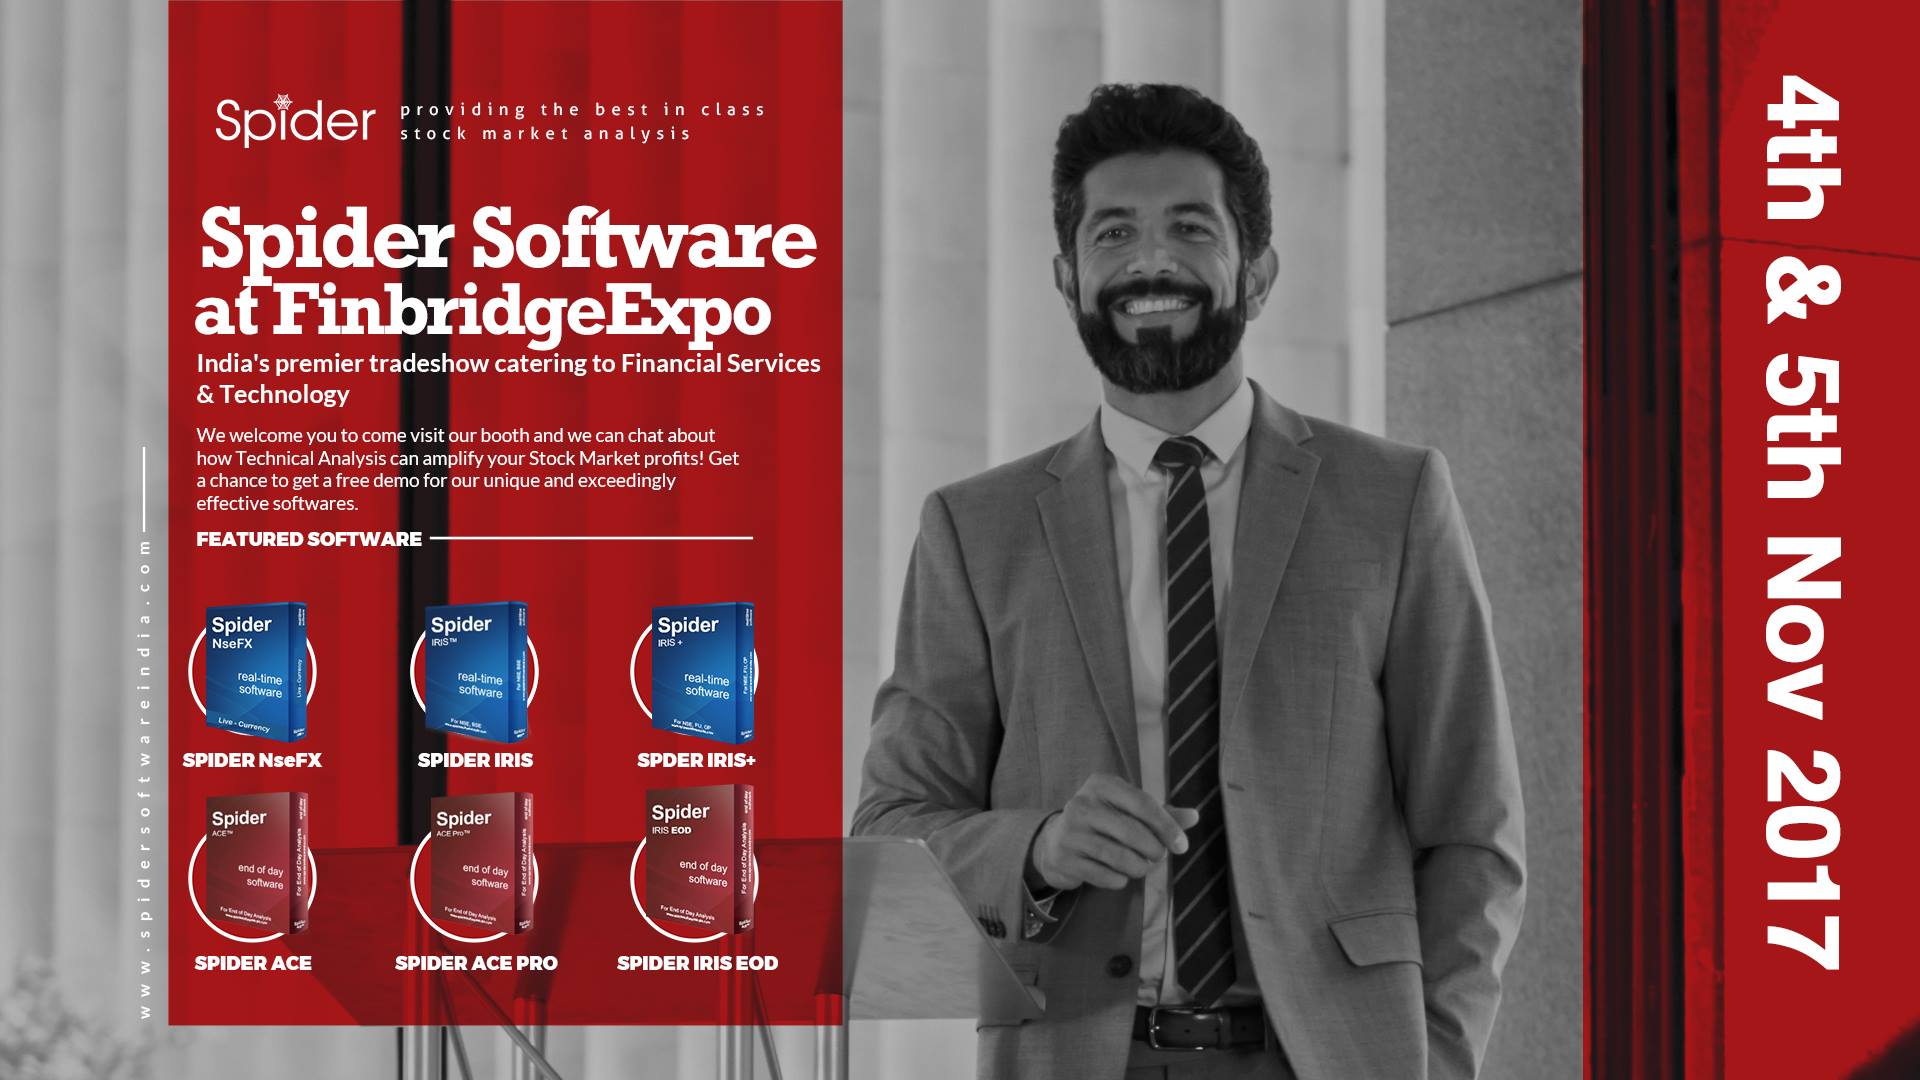 SpiderSoftware Finbridge Expo